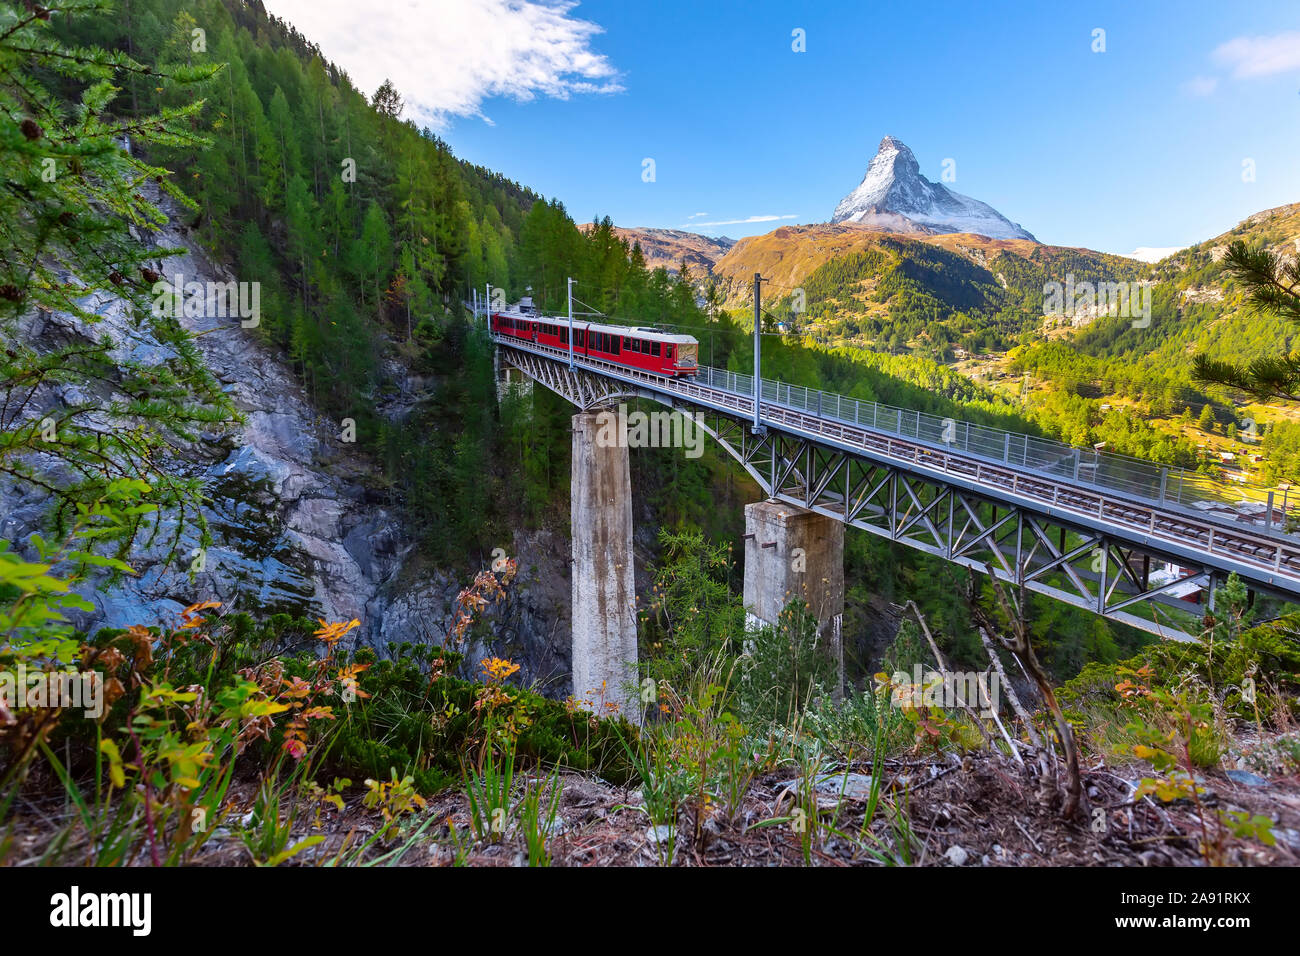 Zermatt, Svizzera. Gornergrat red treno turistico sul ponte e Cervino peal panorama nelle Alpi Svizzere Foto Stock